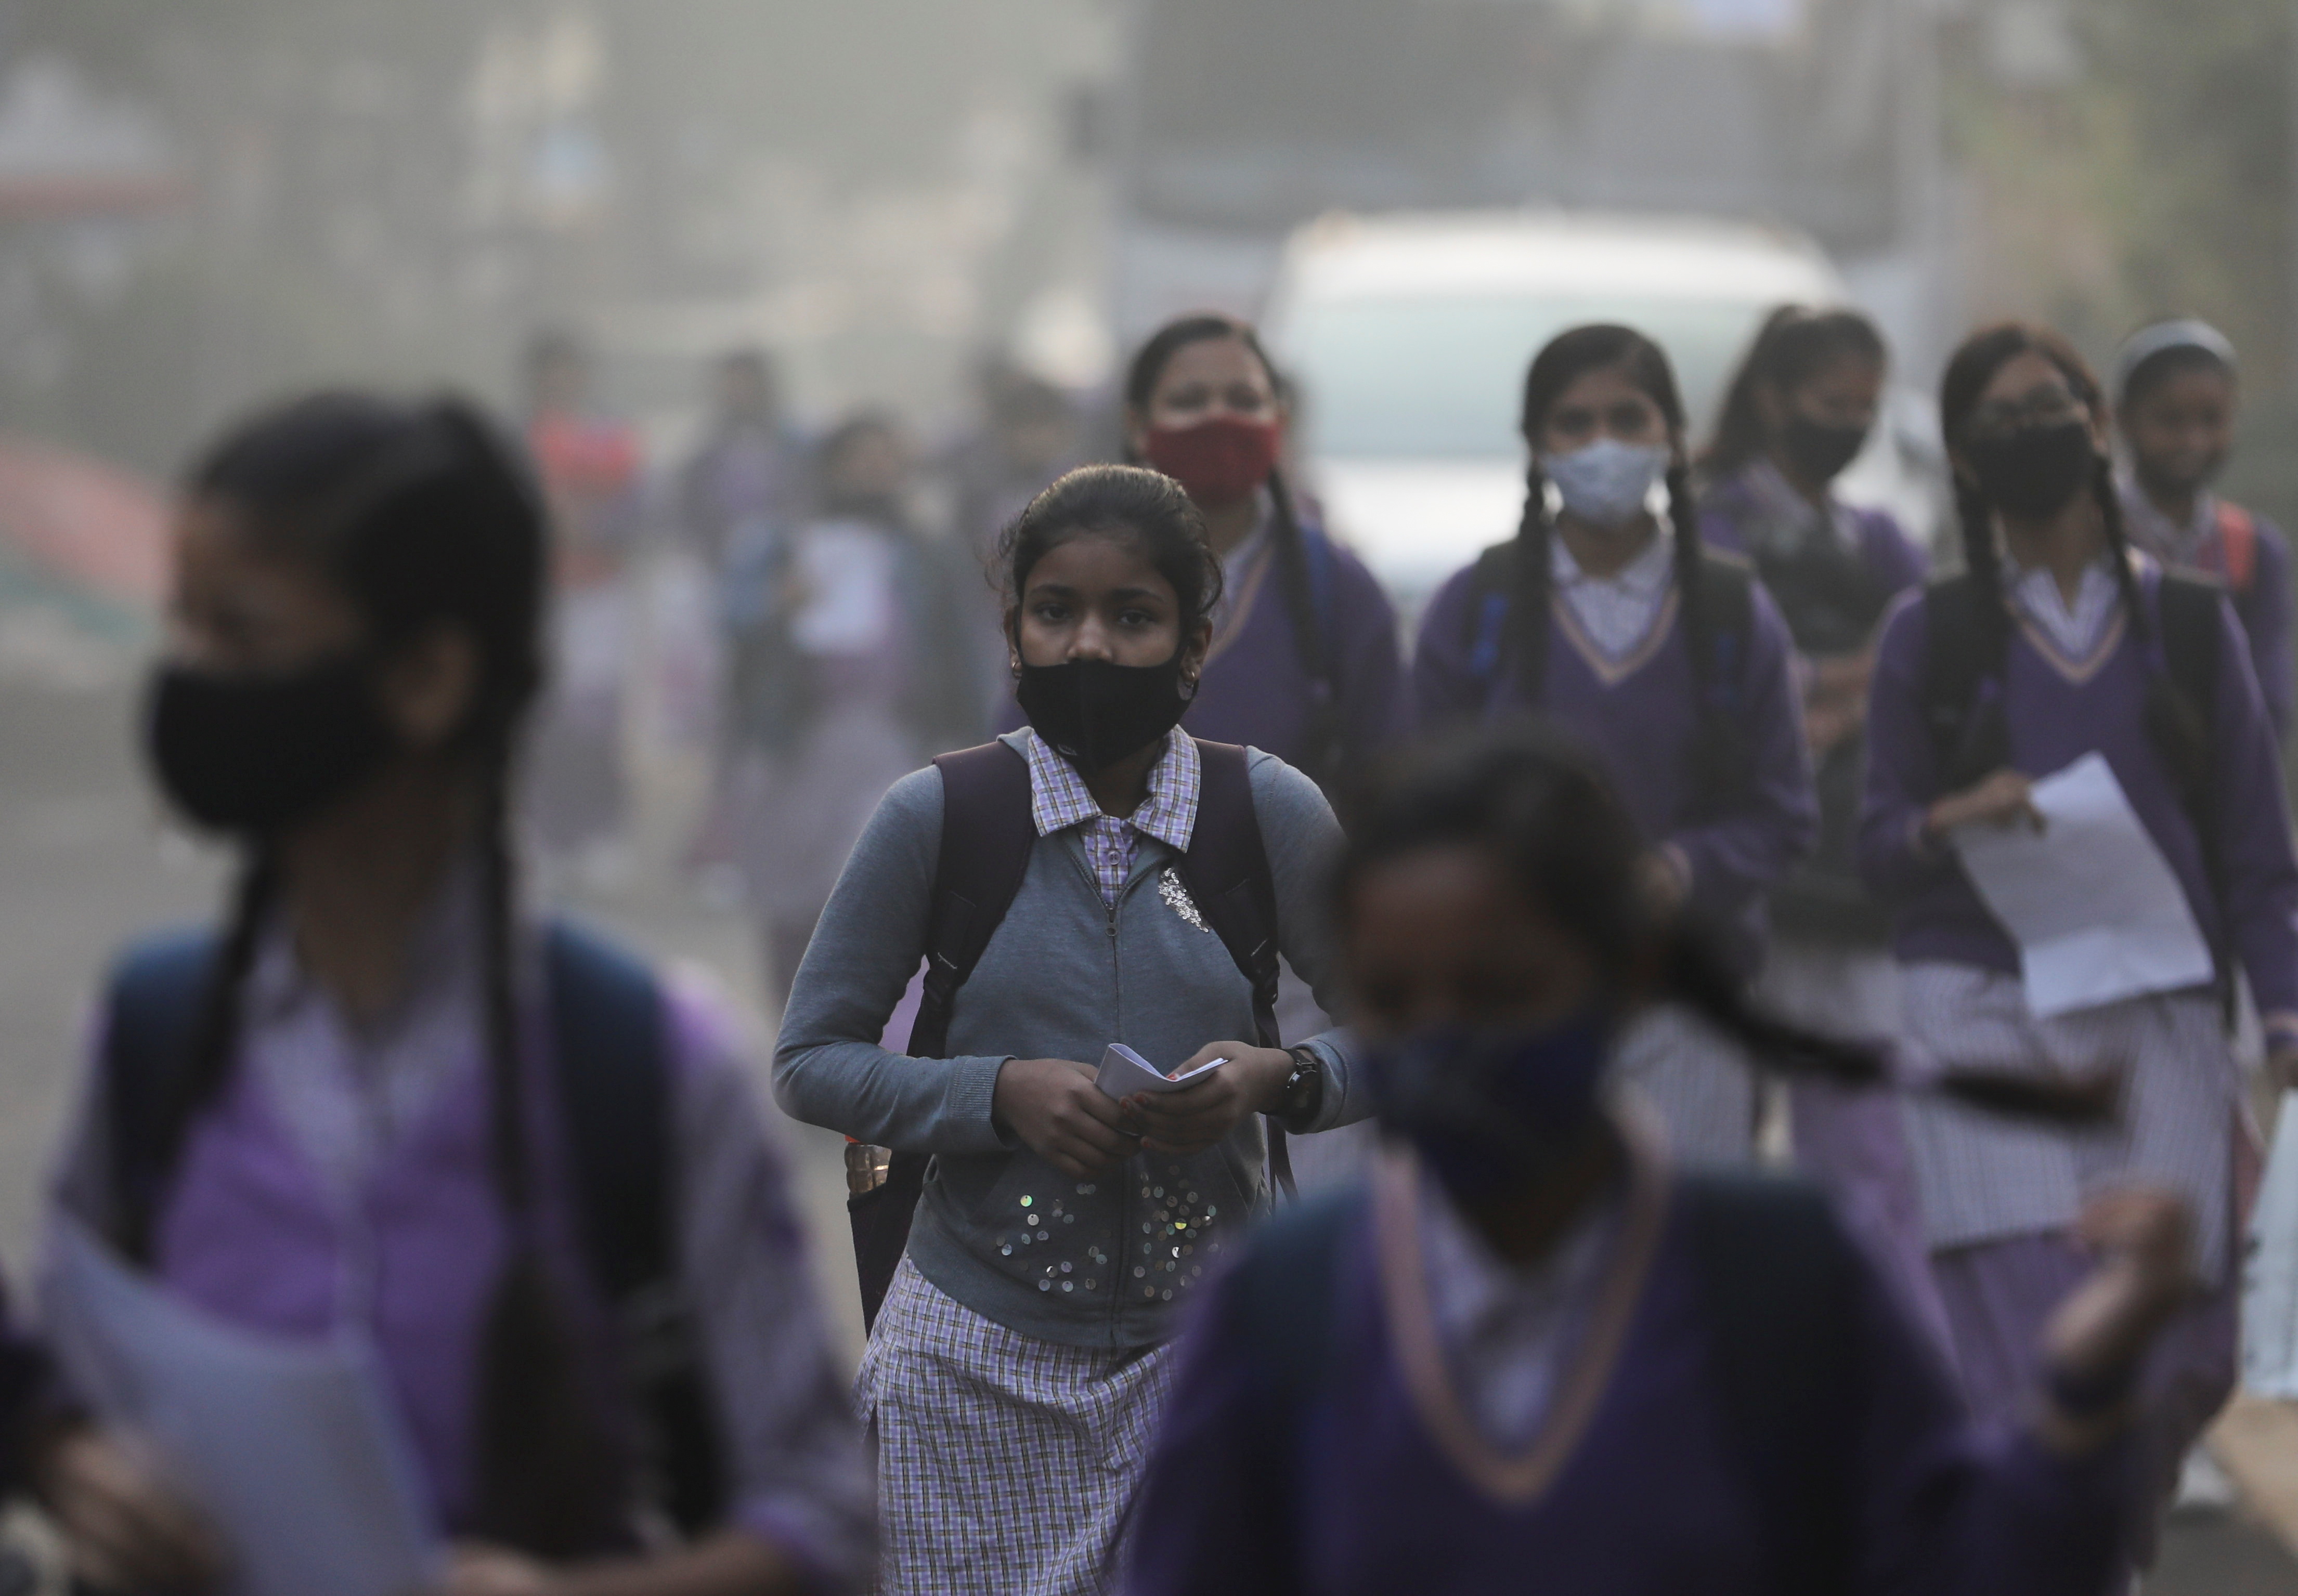 Le ragazze della scuola si dirigono verso la scuola che ha riaperto dopo essere stata chiusa per quasi 15 giorni a causa dell'aumento dell'inquinamento atmosferico, in una mattina piena di smog a Nuova Delhi